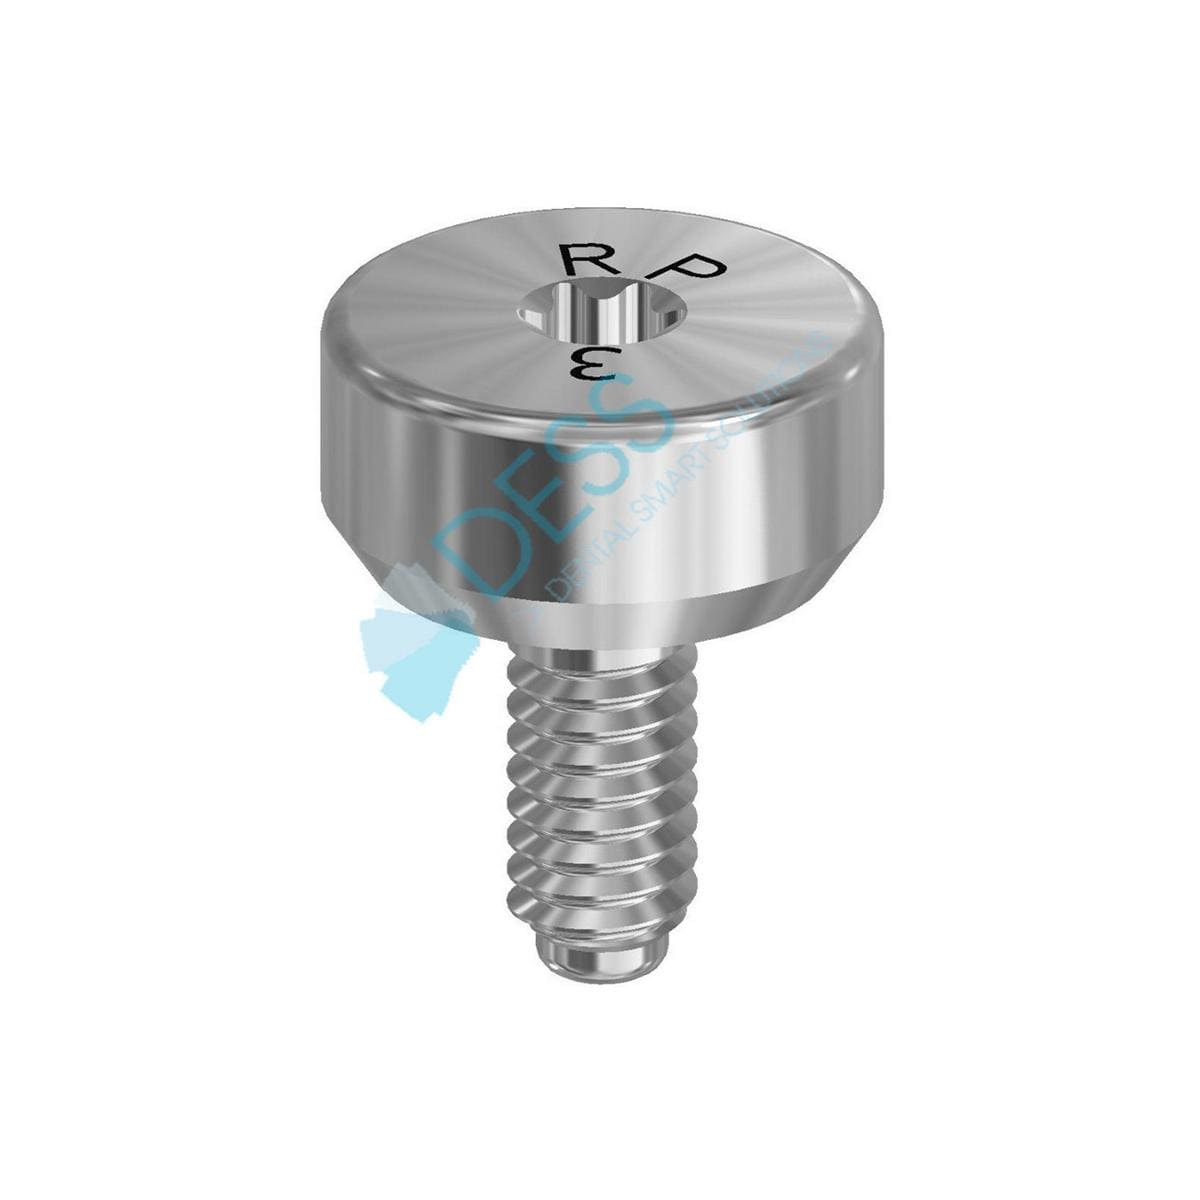 Gingivaformer auf Implantat - kompatibel mit Straumann® - RN Ø 4,8 mm, Höhe 3,0 mm